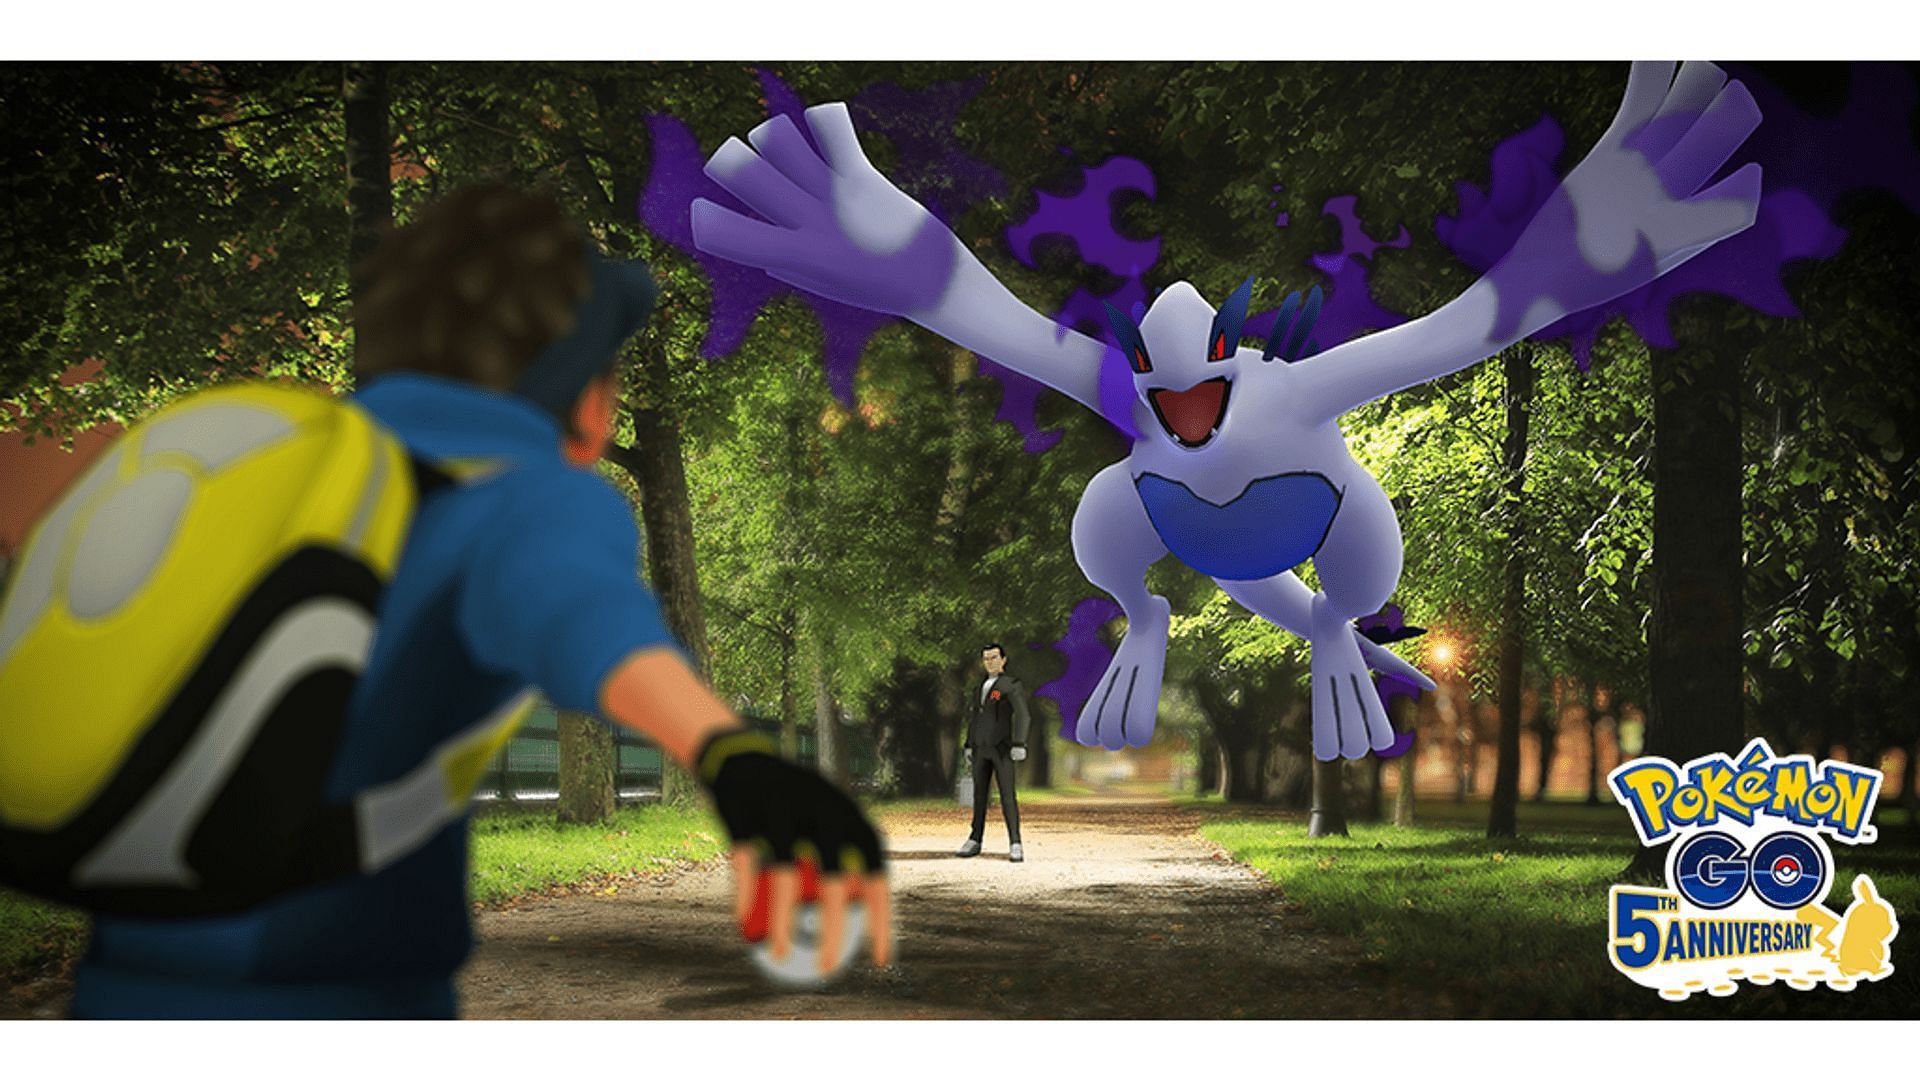 How to get Shiny Shadow Lugia in Pokémon GO